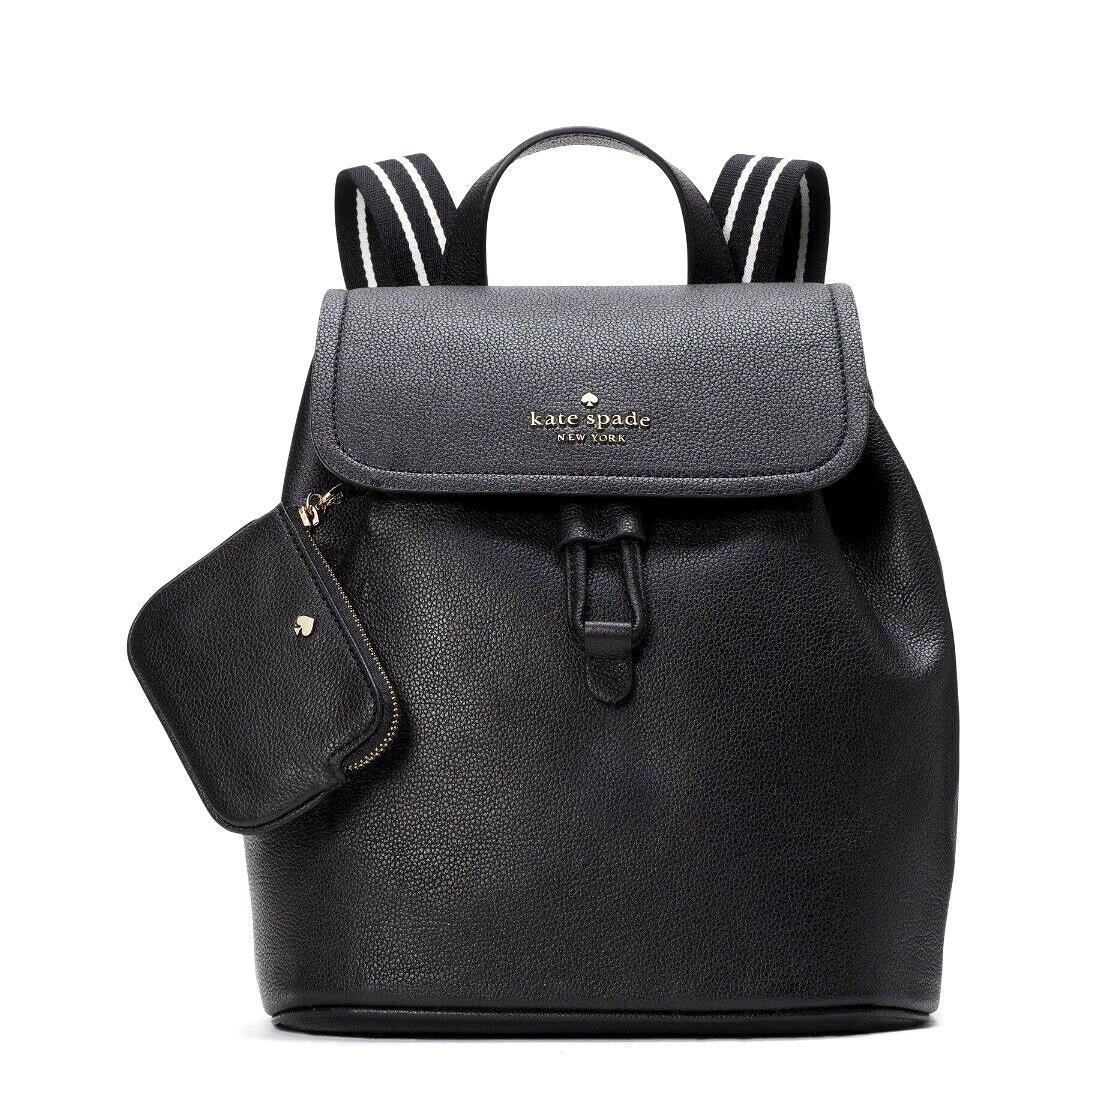 New Kate Spade Rosie Medium Flap Backpack Black - Exterior: Black